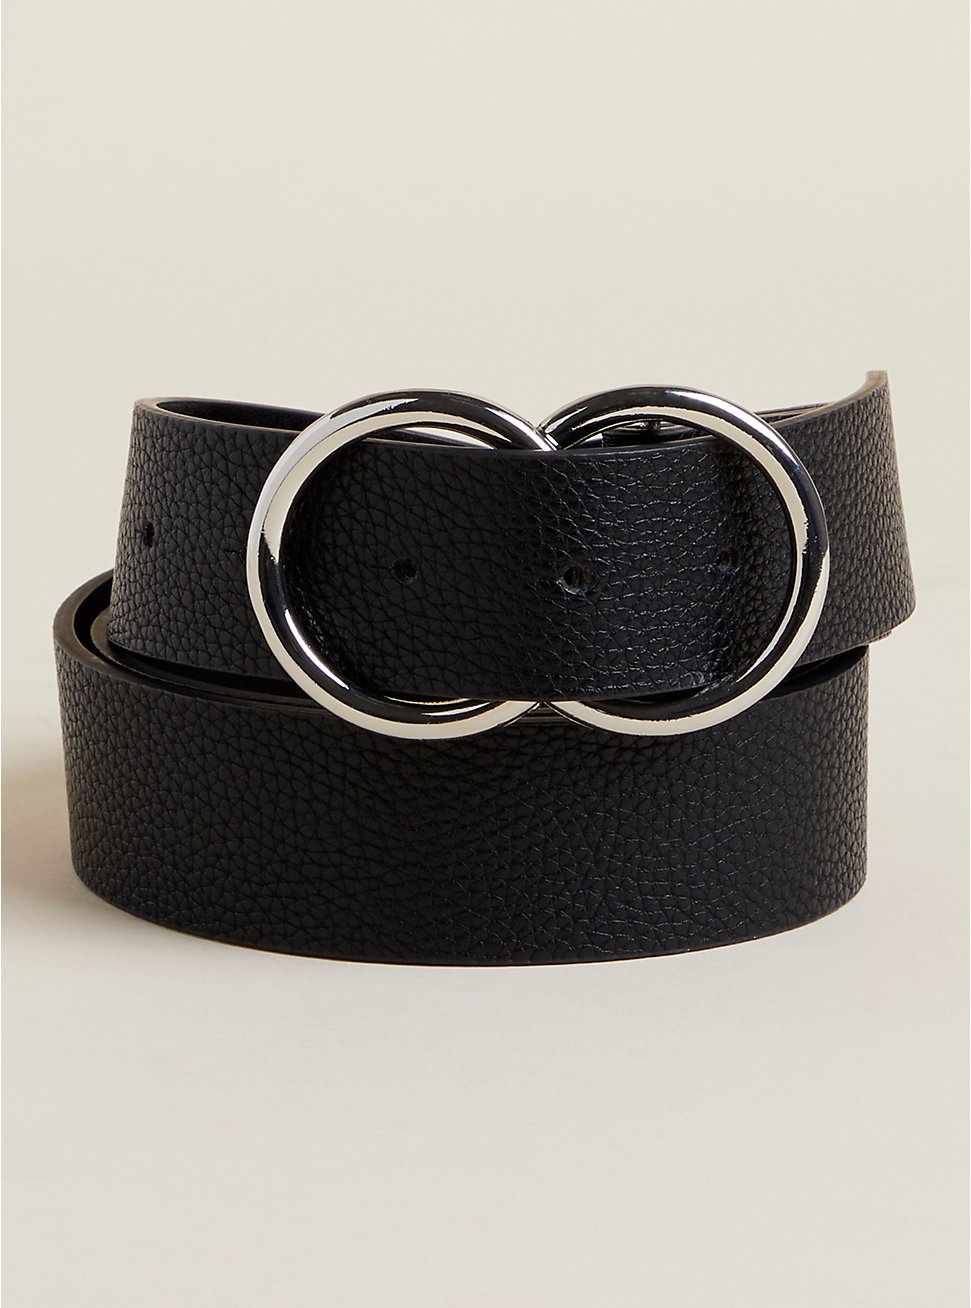 Plus Size Faux Leather Double Ring Jean Belt, BLACK, hi-res